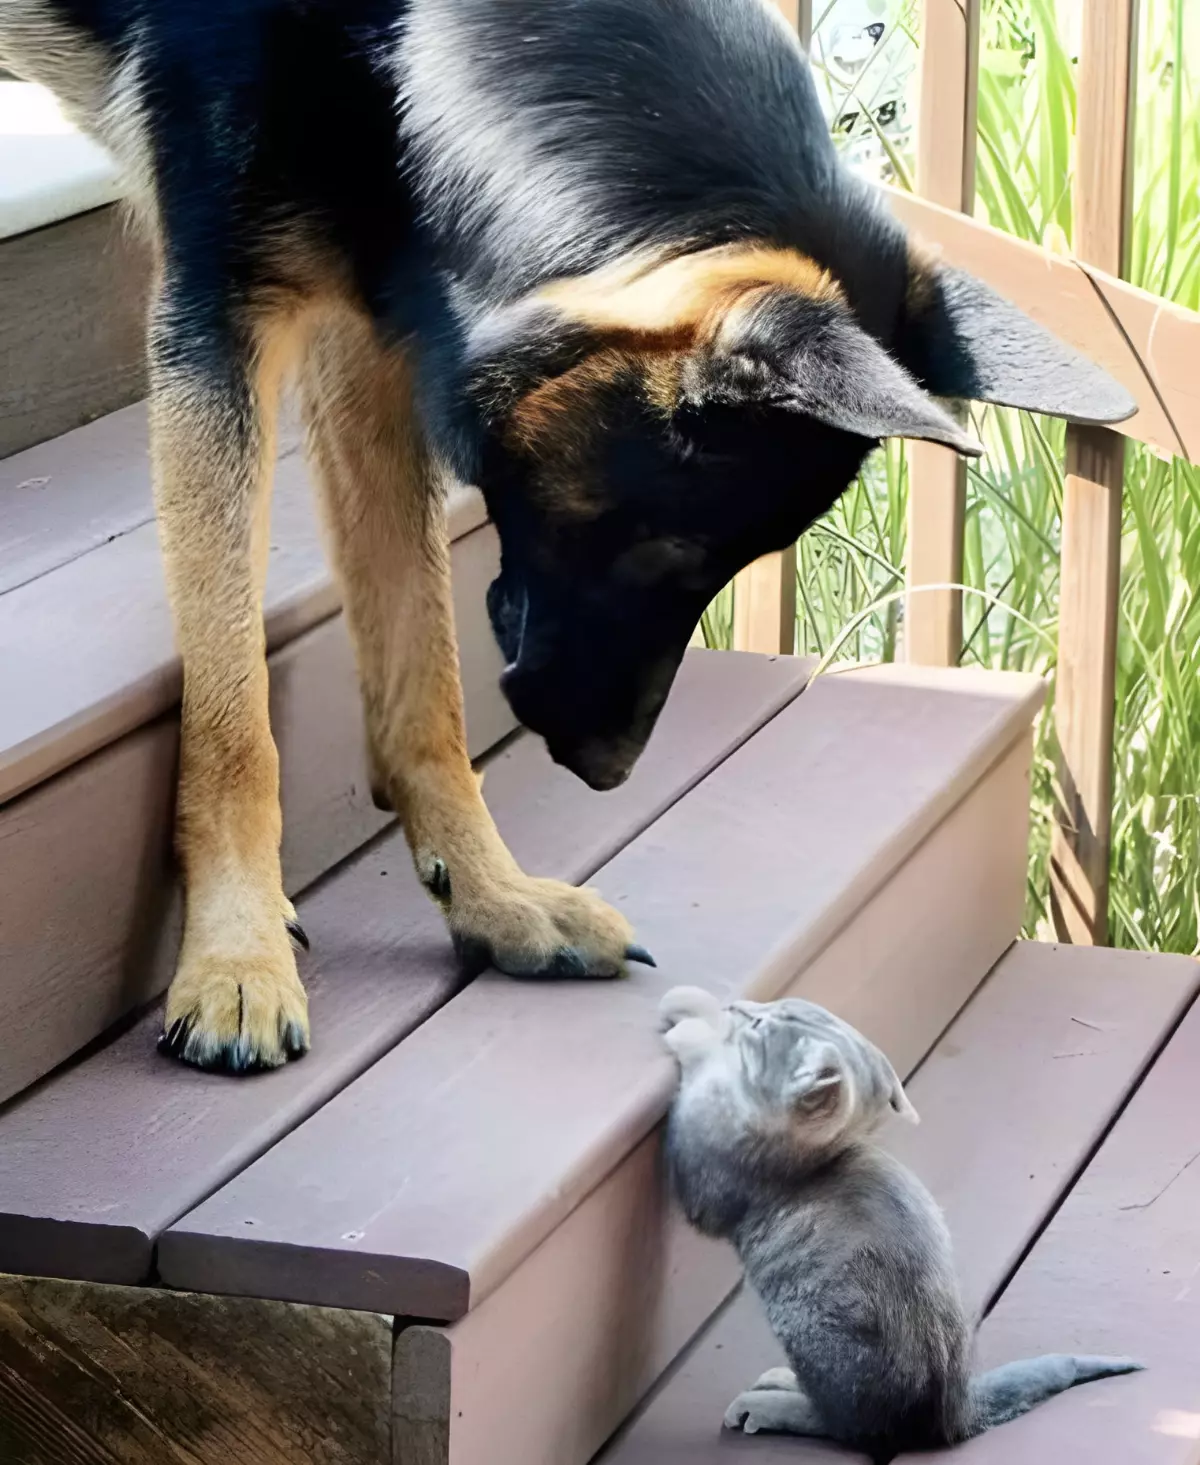 gros chien et petit chat gris sur un escalier en bois se regardent face a face